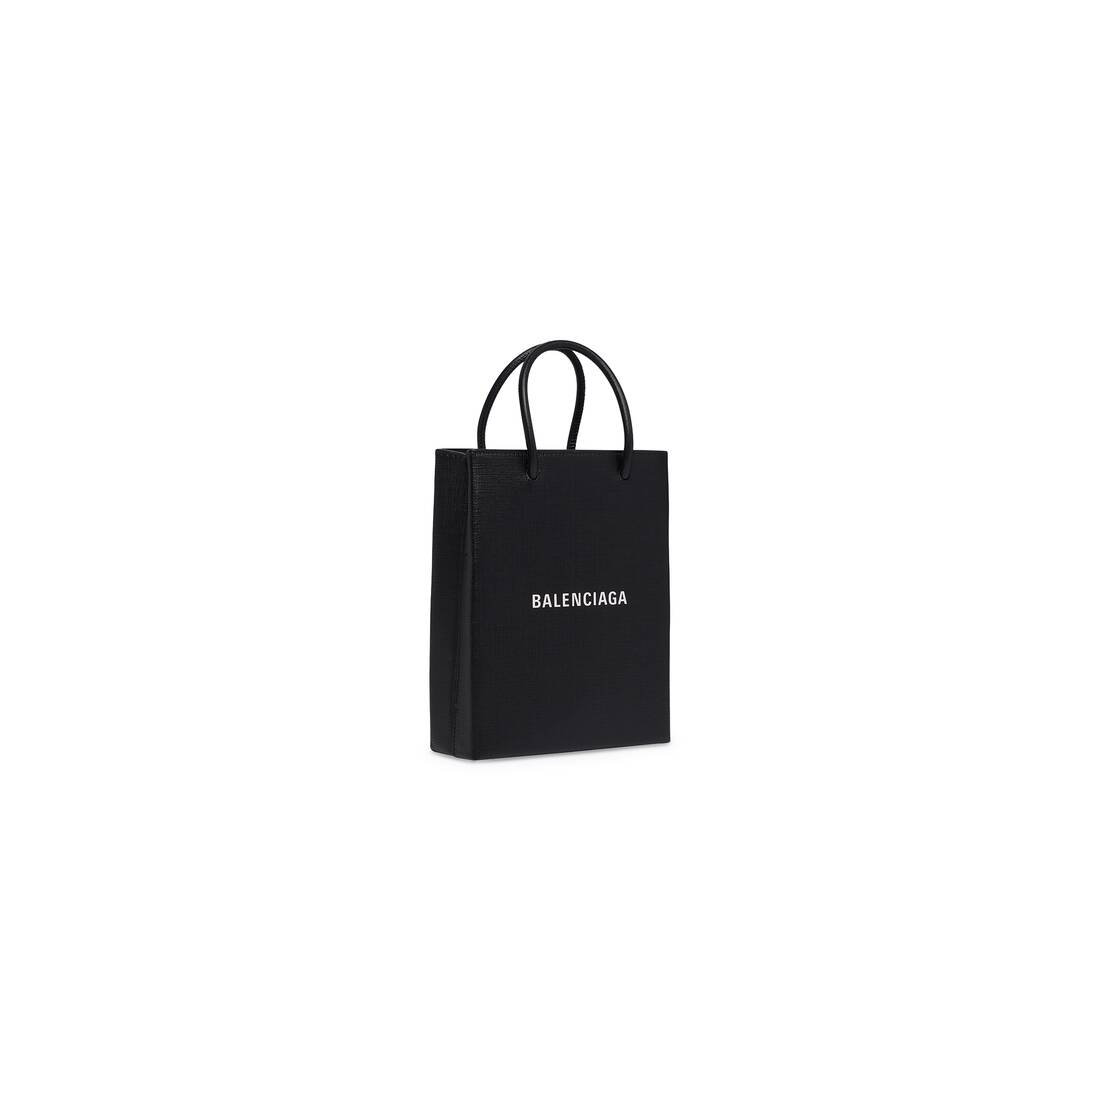 Balenciaga Logo small shopping bag | Balenciaga shopping bag, Balanciaga bag,  Balenciaga bag